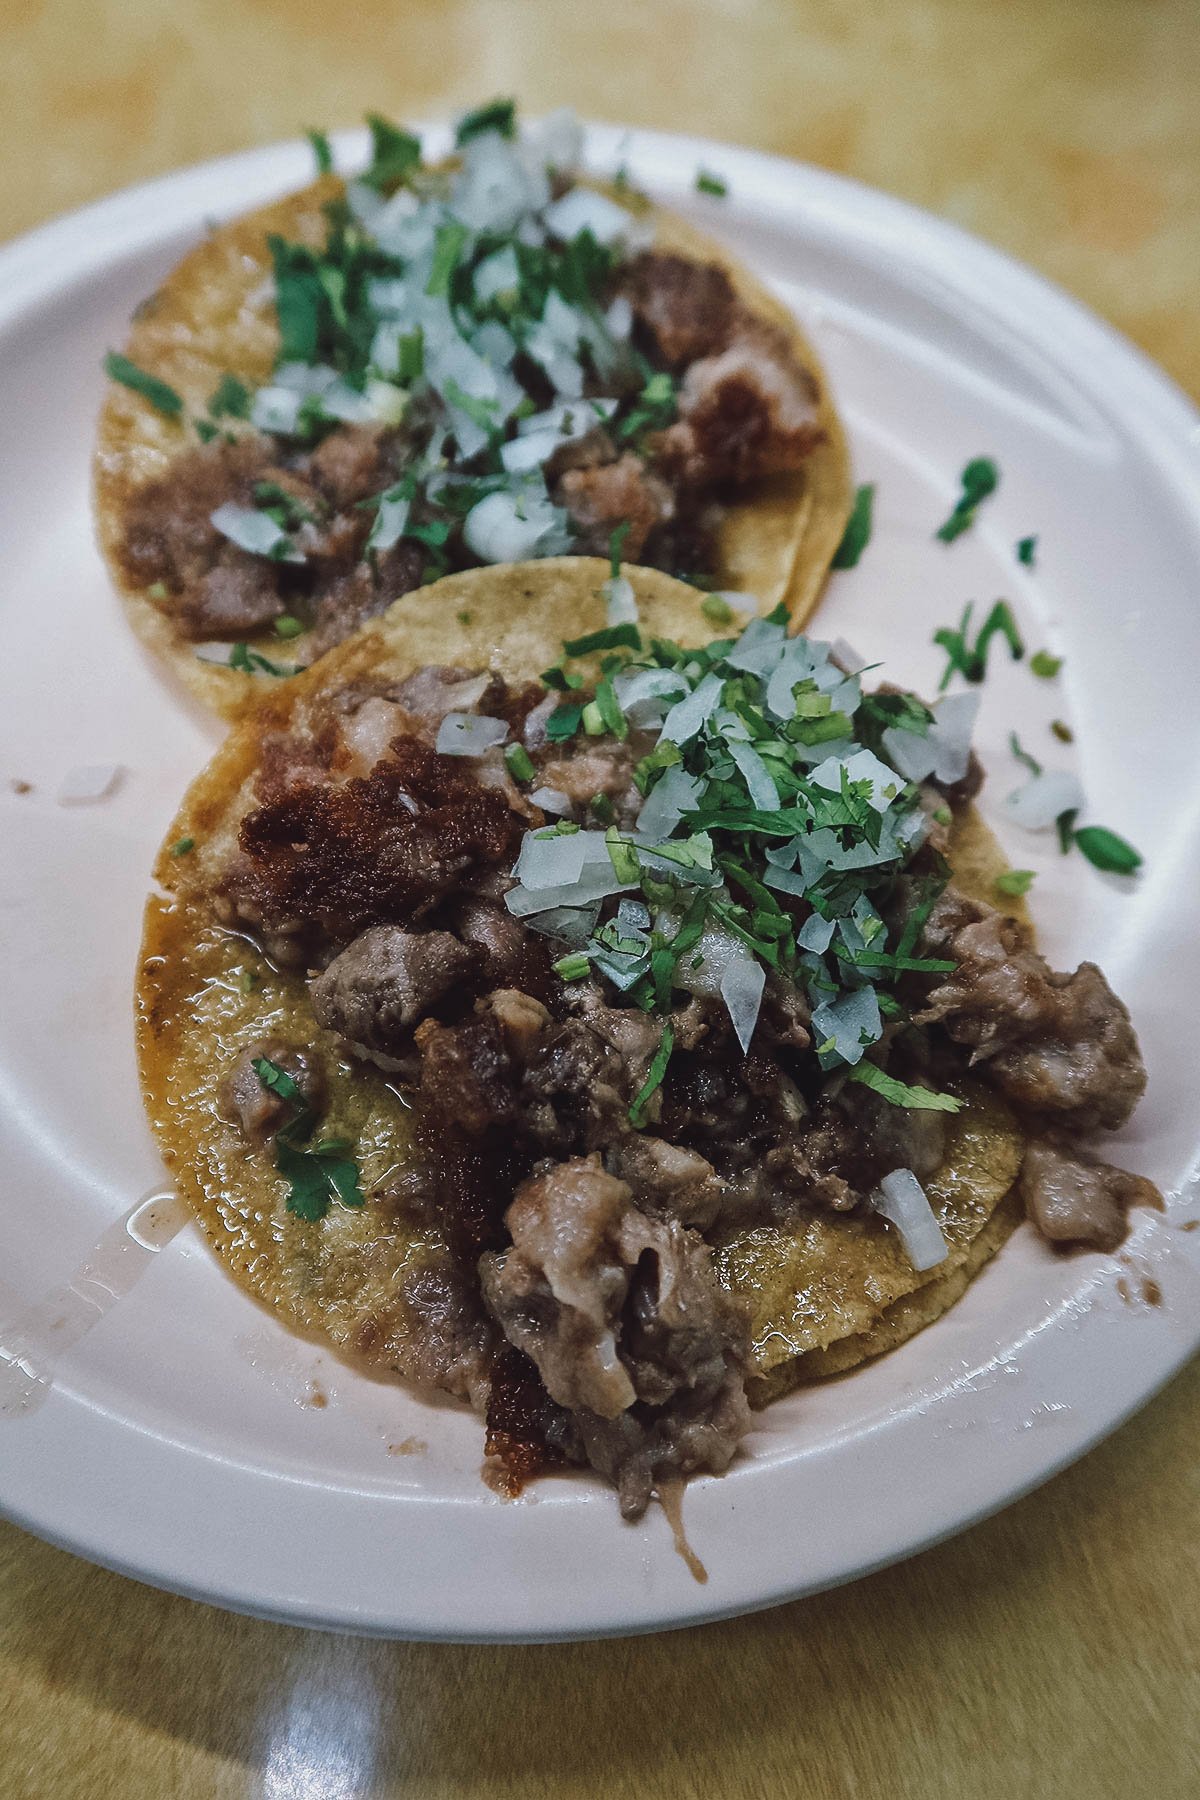 Tacos de suadero at a restaurant in Guanajuato